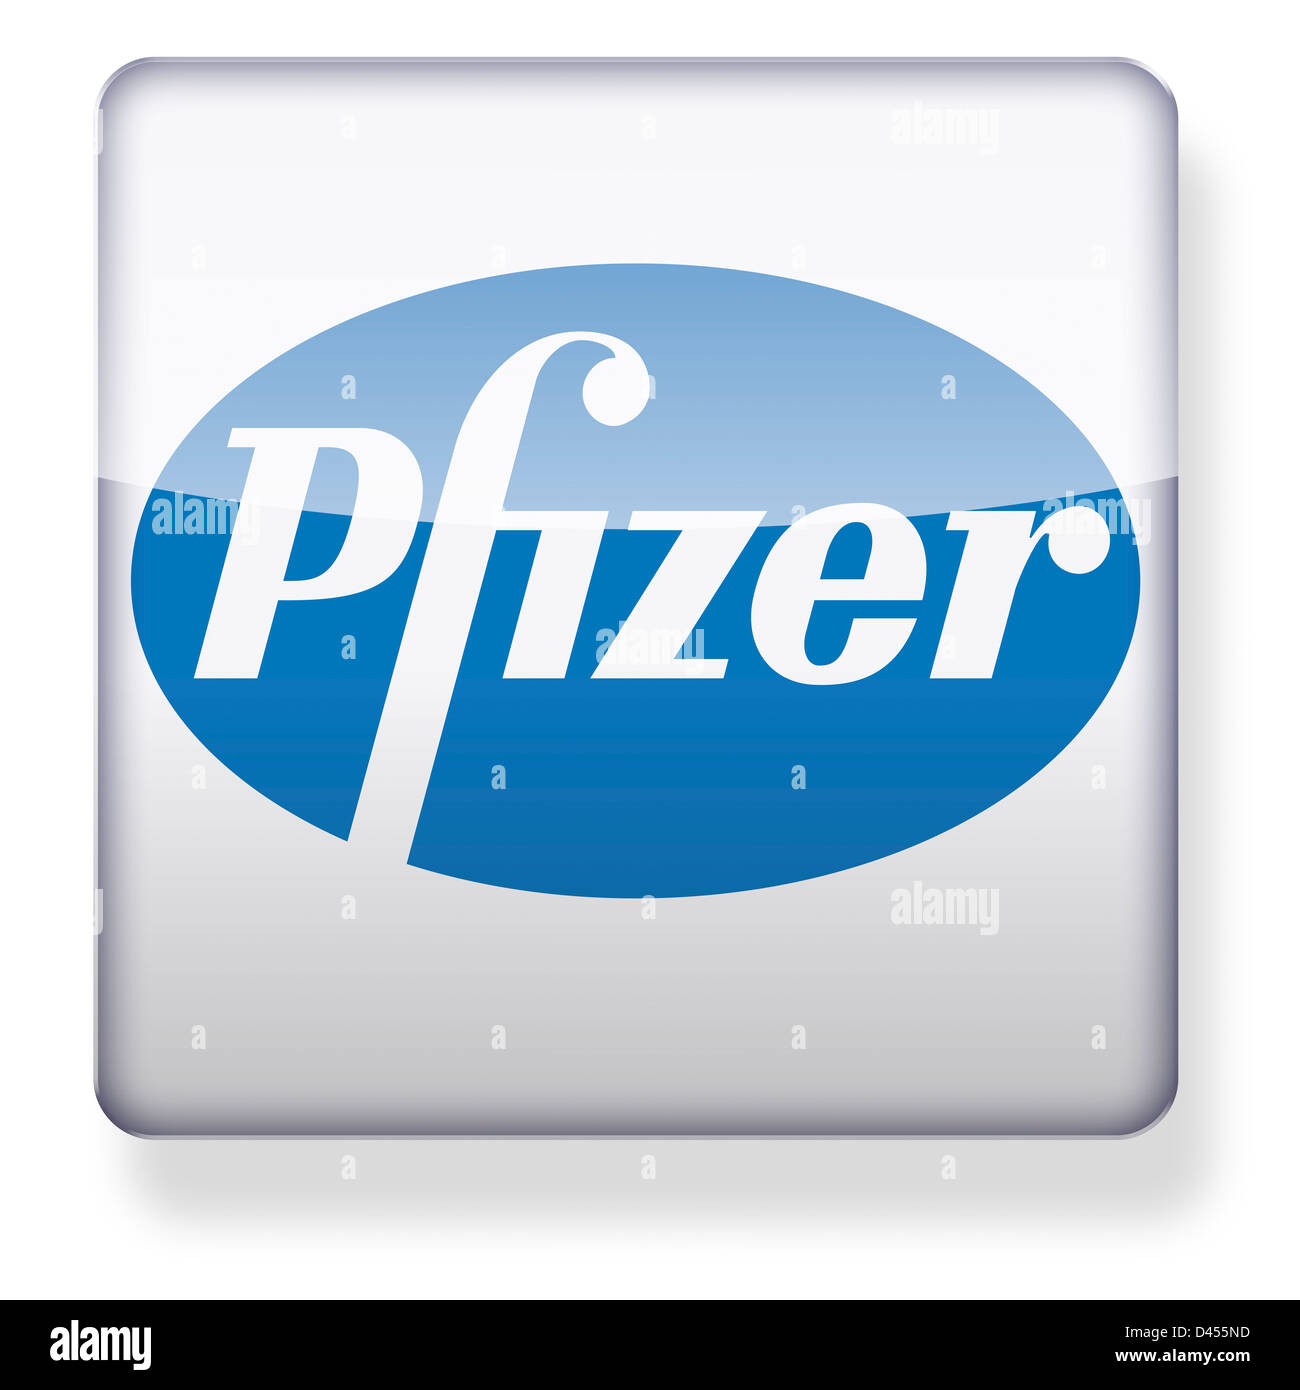 Pfizer logotipo como el icono de una aplicación. Trazado de recorte incluido. Foto de stock